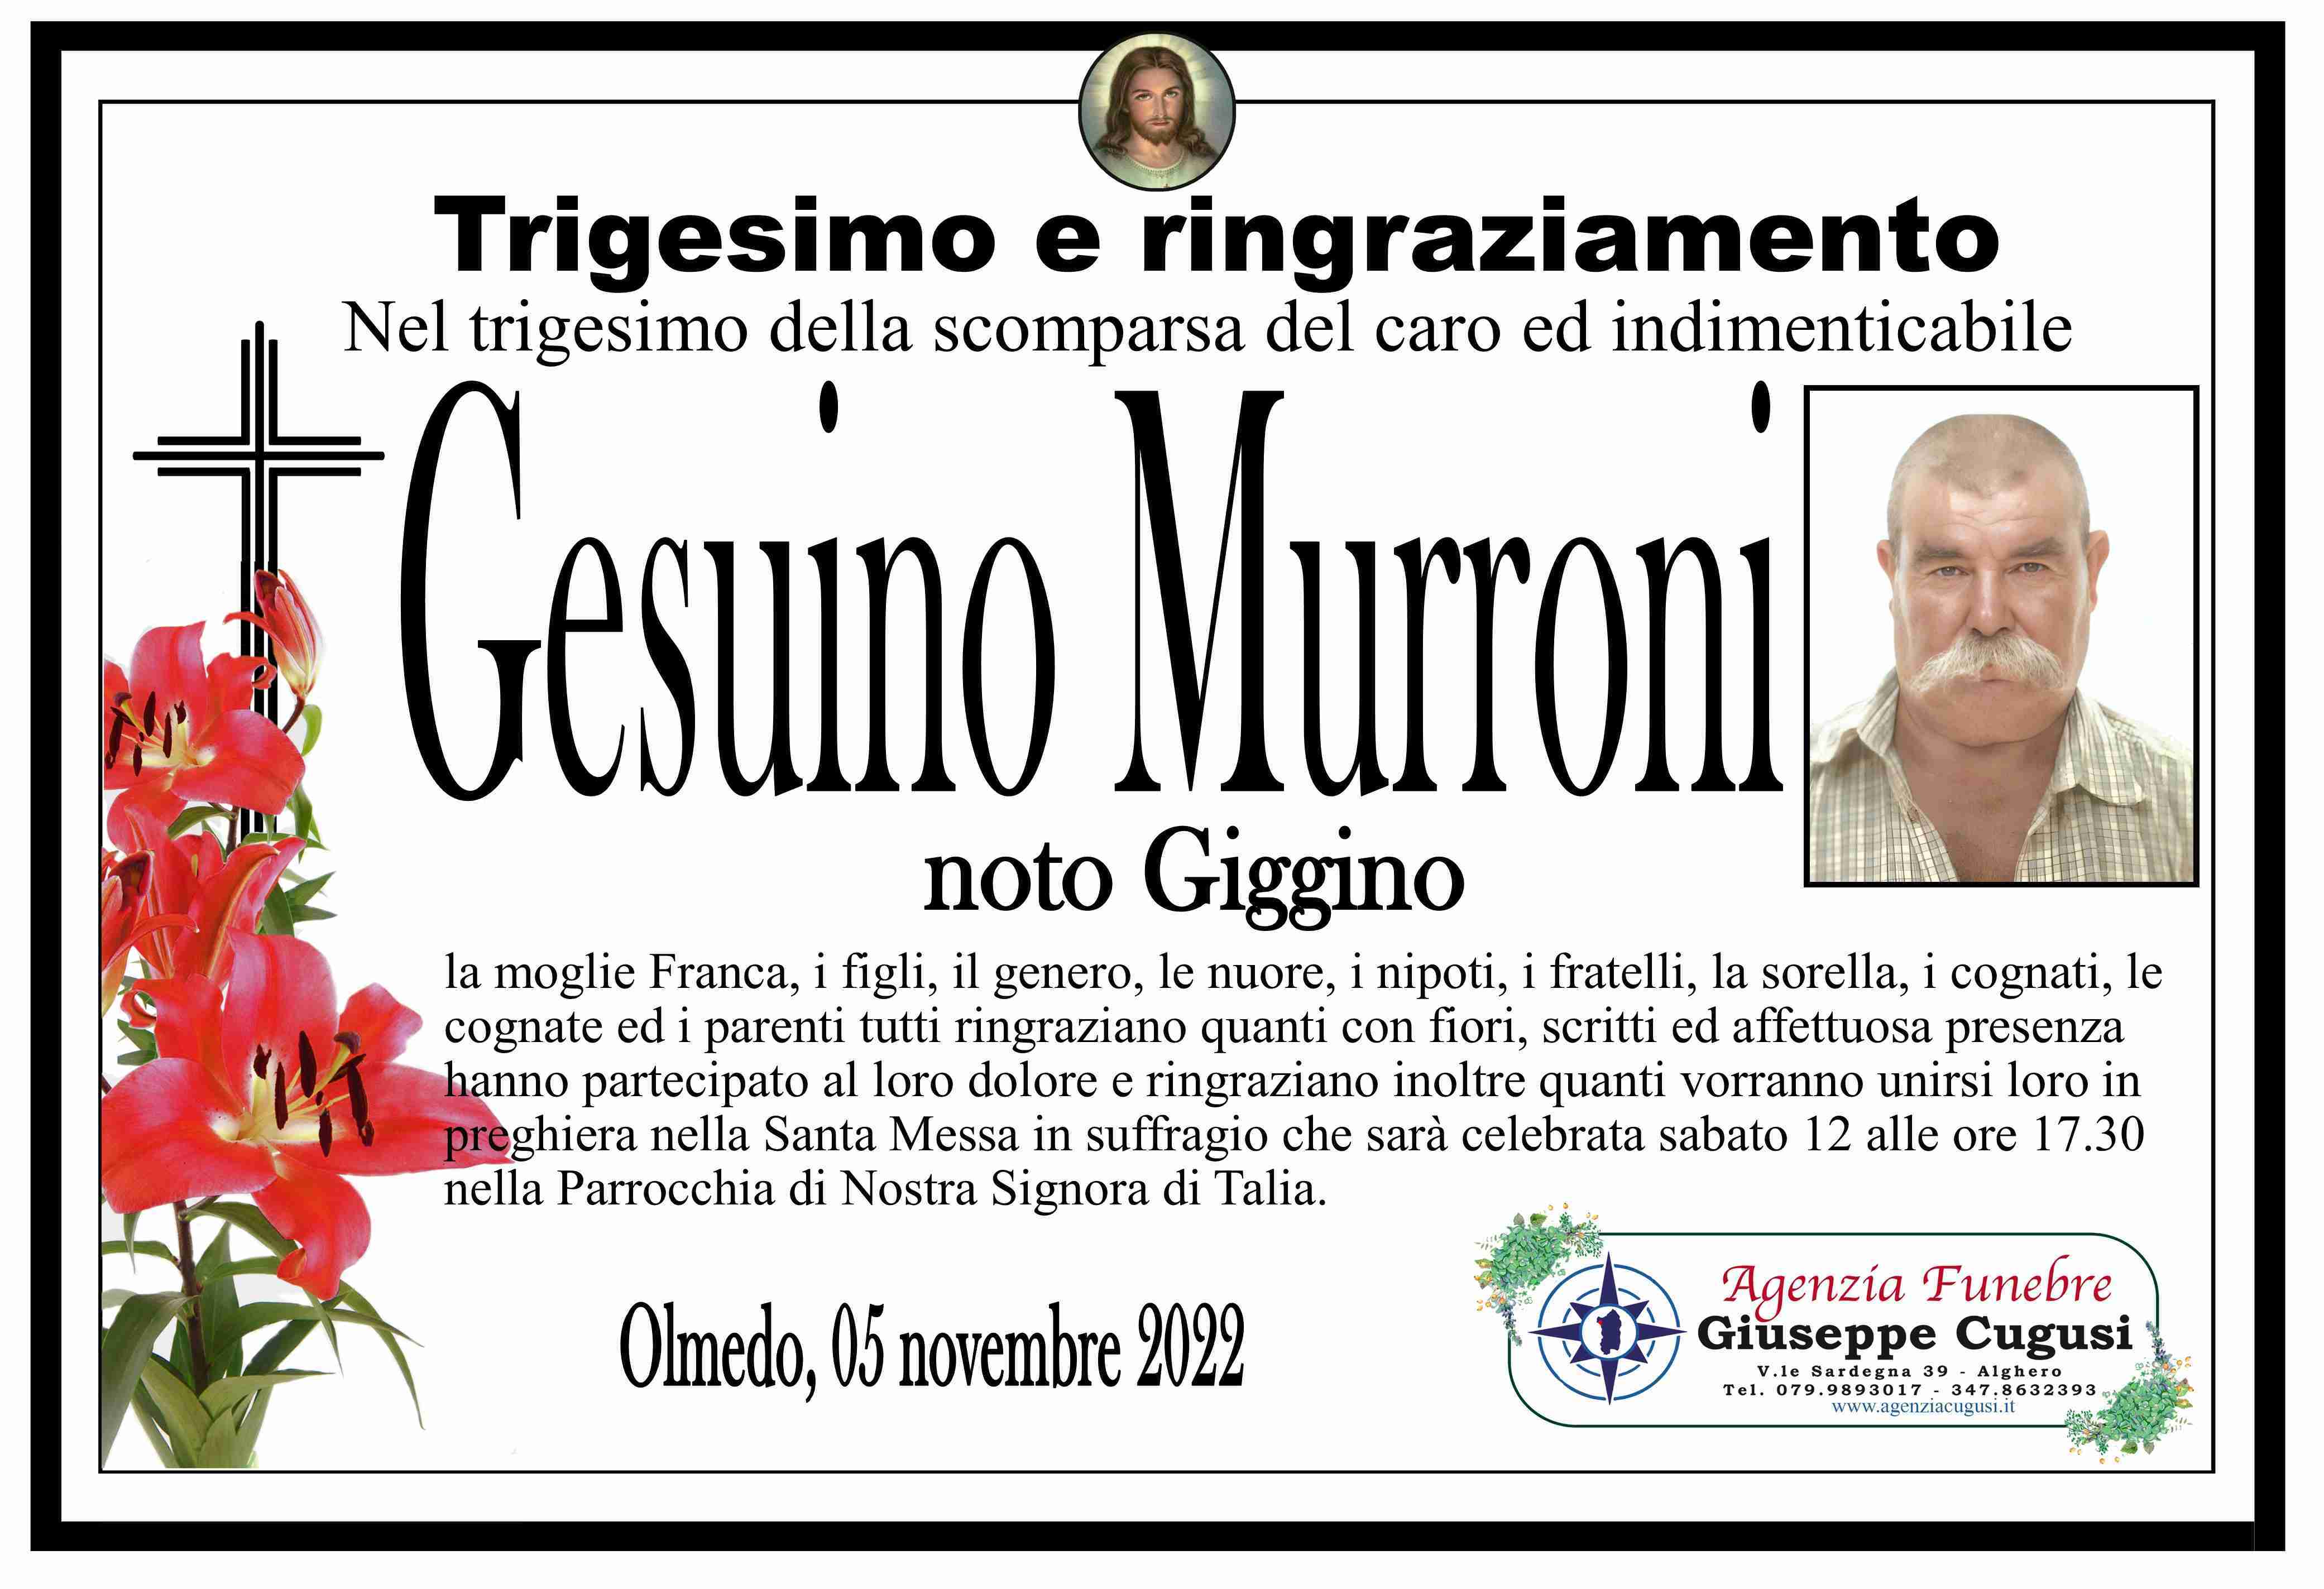 Gesuino Murroni